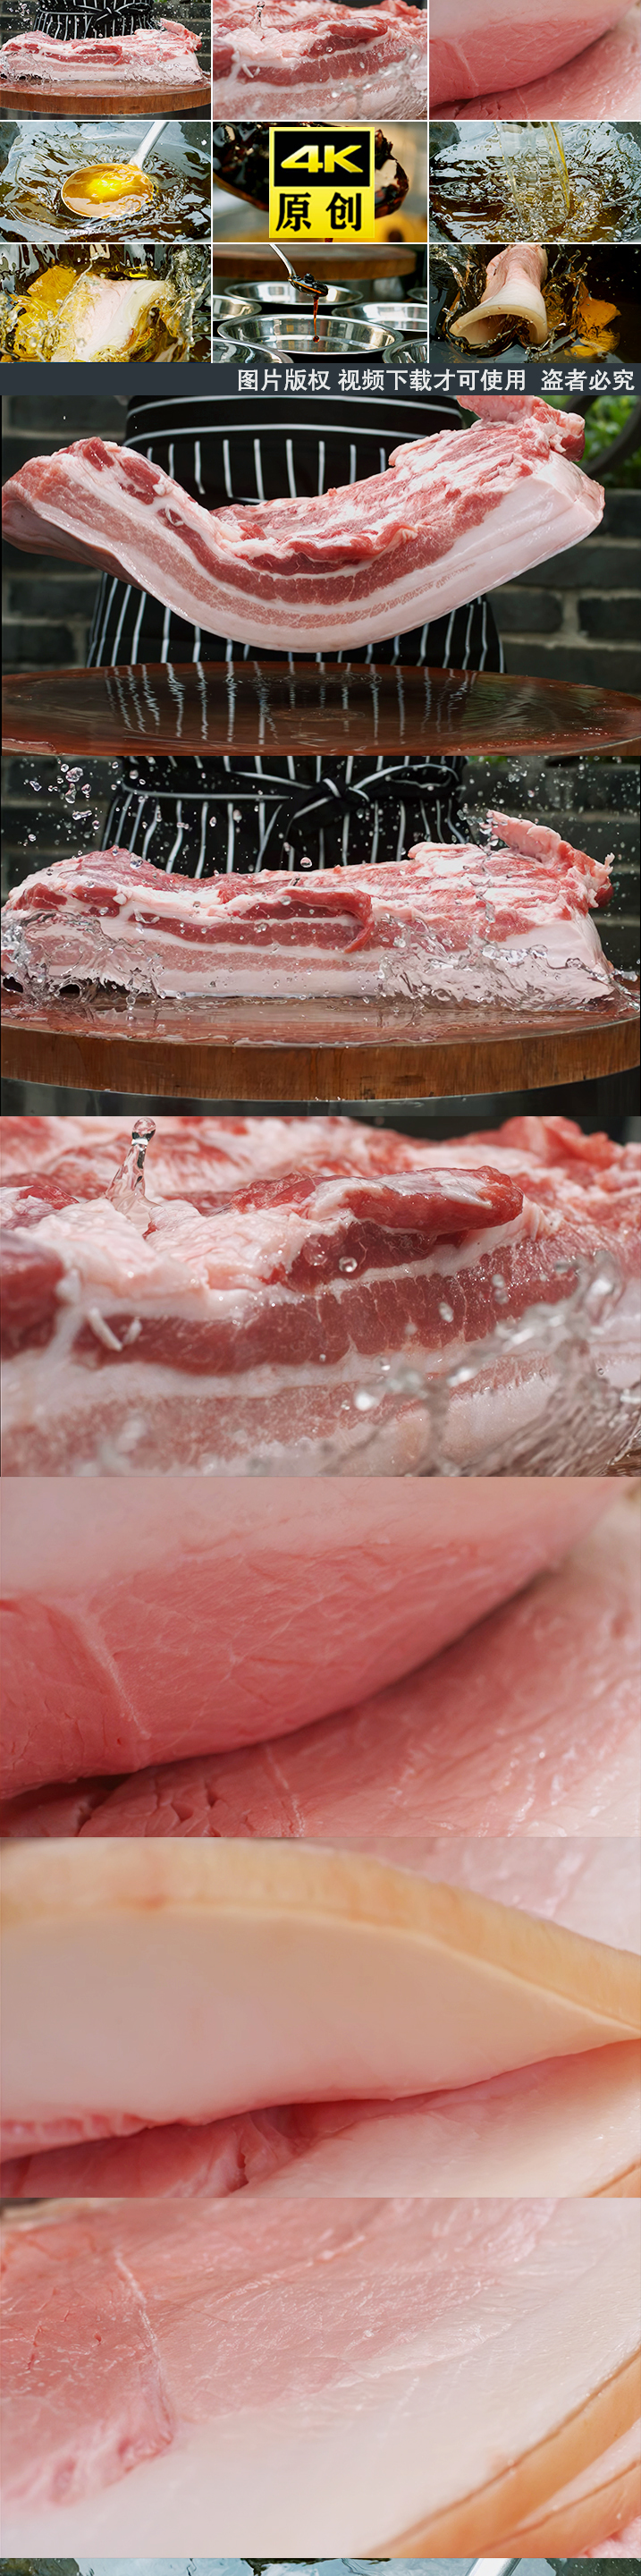 肉油五花肉美食食材厨房厨师猪肉烹饪回锅肉